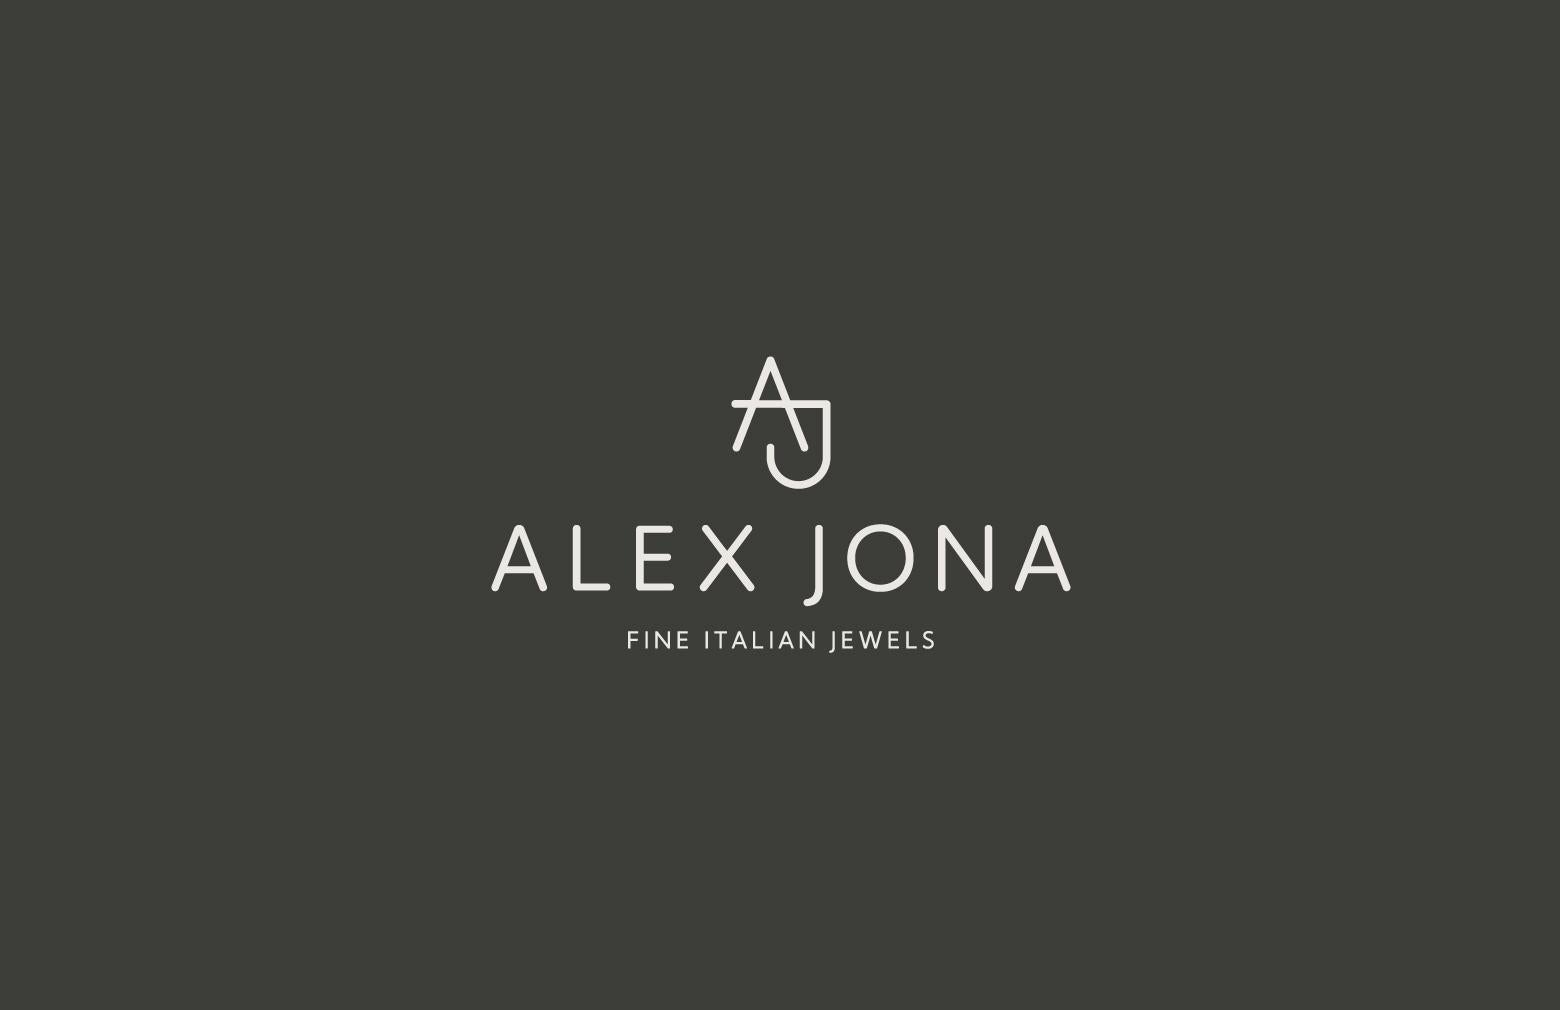 Alex Jona White Diamond 18 Karat White Gold Star Earrings For Sale 6